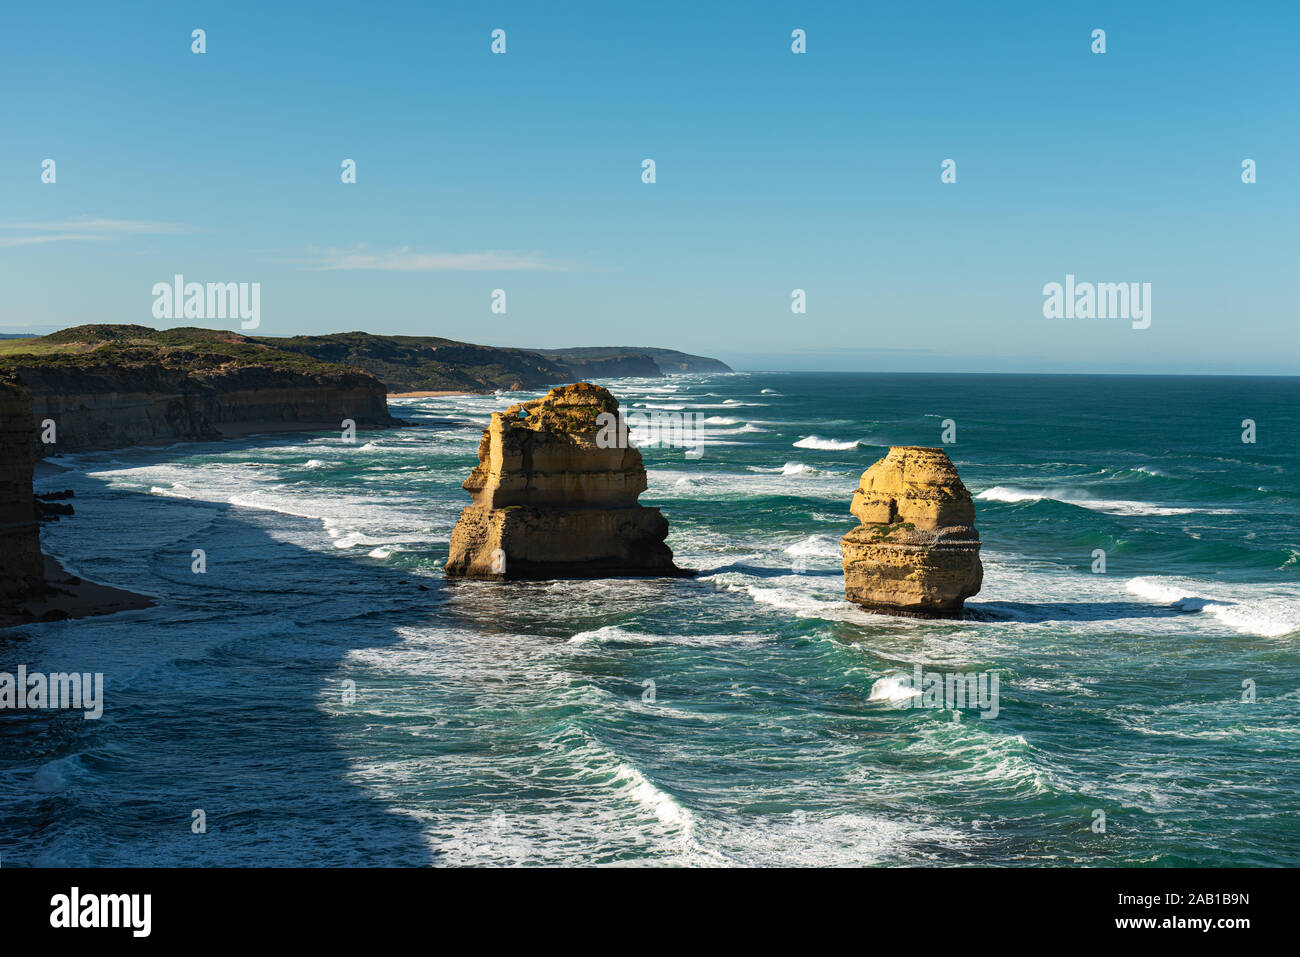 I dodici Apostoli, una collezione di rocce calcaree off shore del Parco Nazionale di Port Campbell, mediante la Great Ocean Road in Victoria, Australia Foto Stock